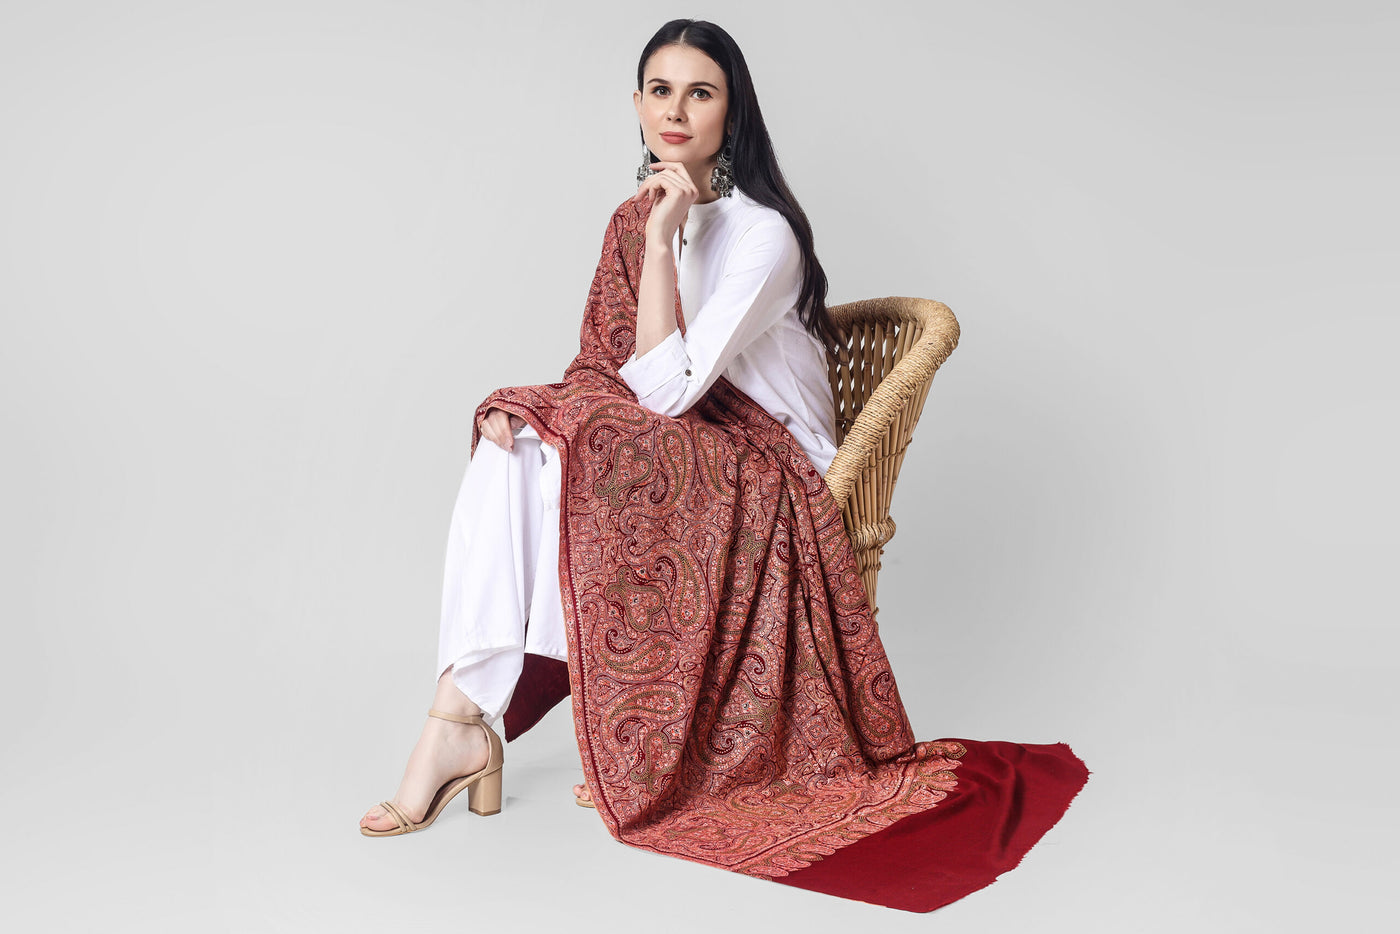  PASHMINA SHAWL -Maroon Sozni Needlework Jama Pashmina shawl. "PASHMINA SHAWLS IN CHINA - "KEPRA PASHMINA SHAWLS - Luxury at Its Best"